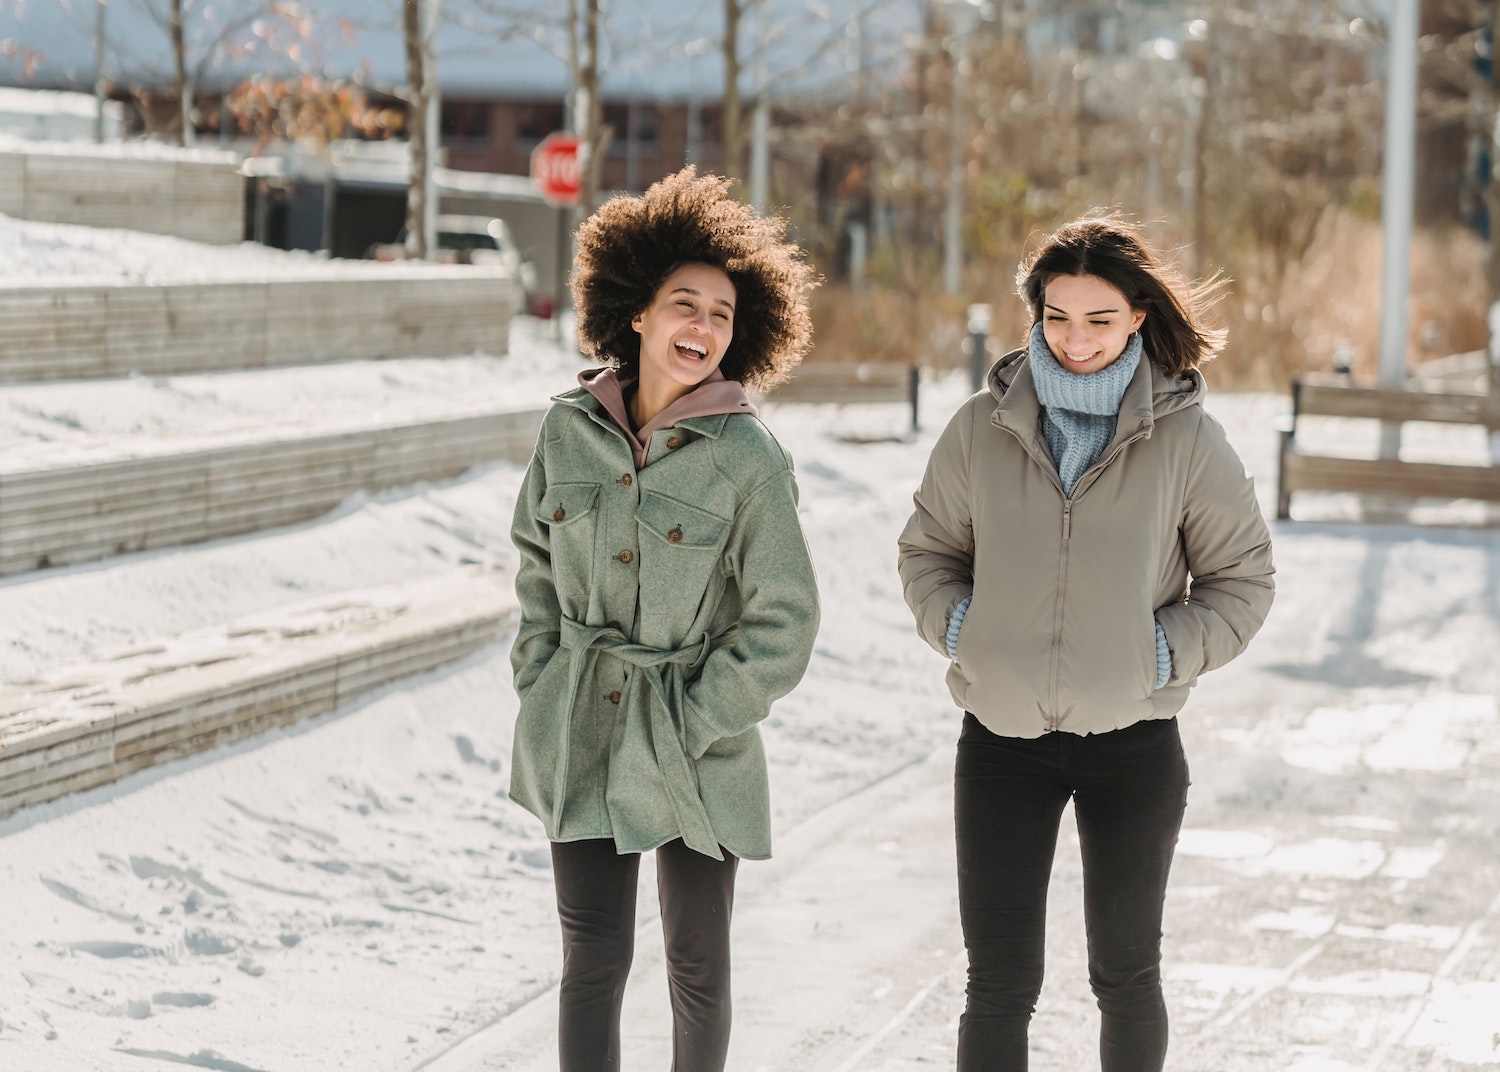 deux femmes marchent dans la rue en hiver